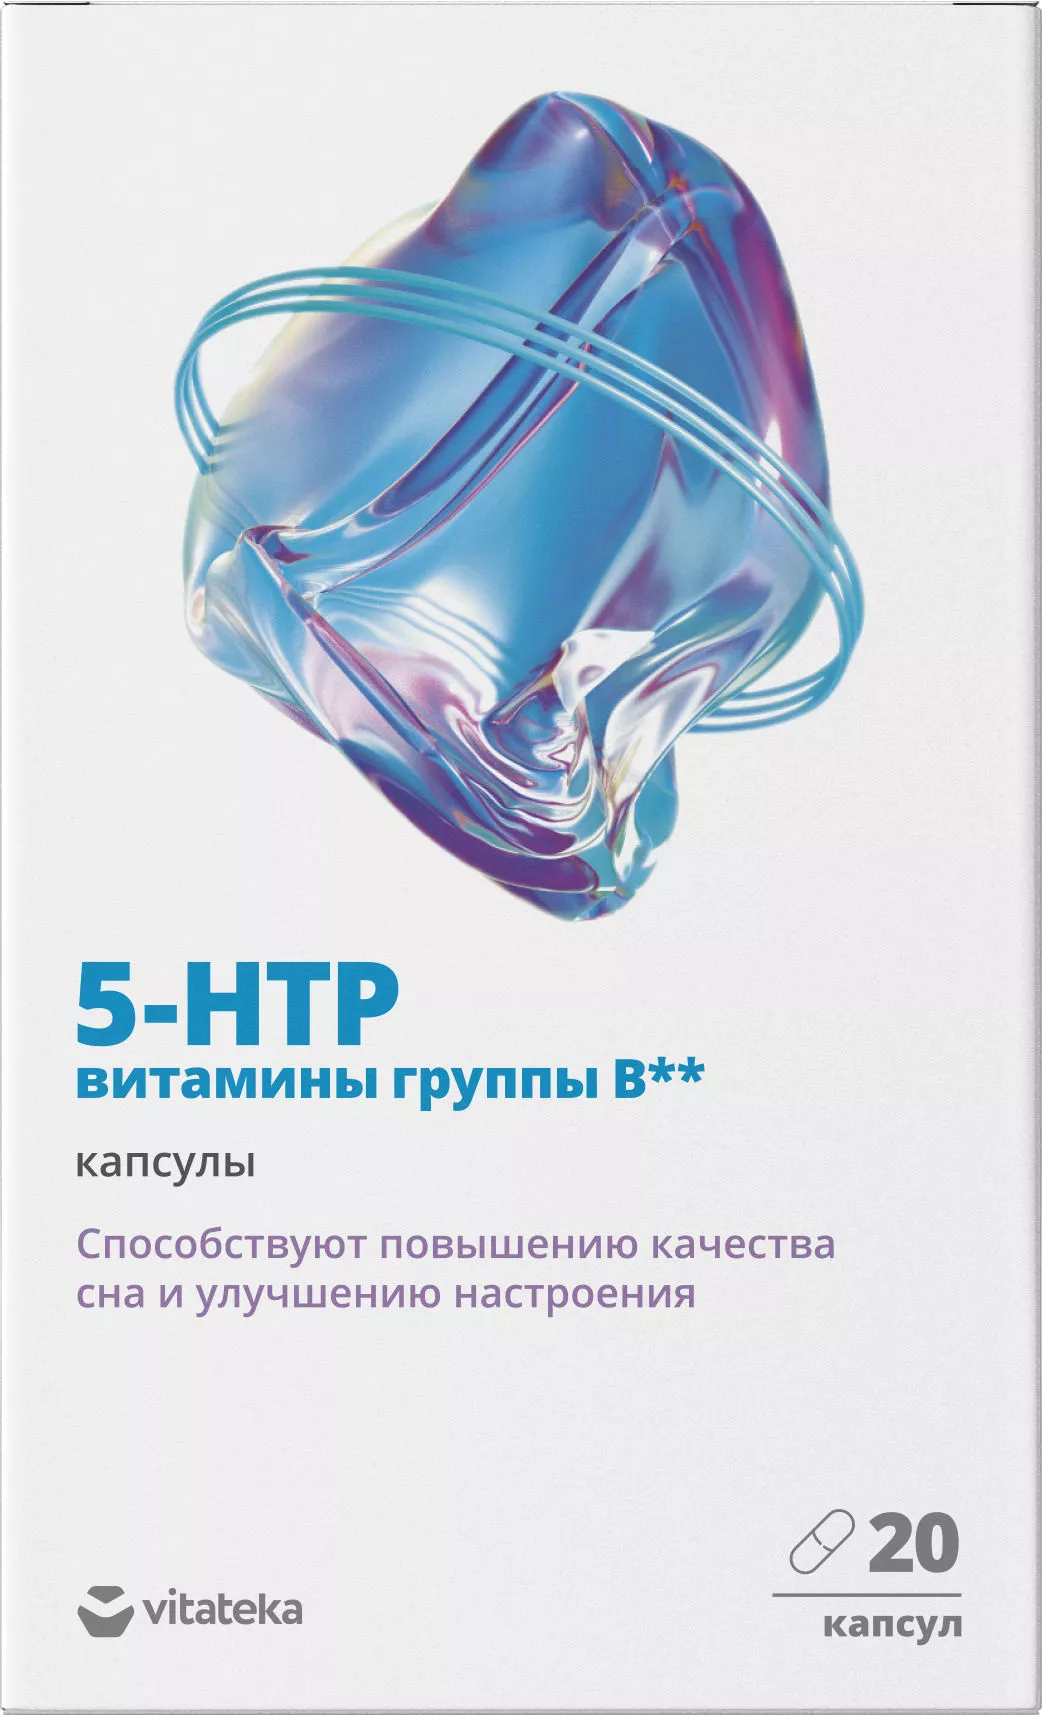 5-HTP с витаминами группы В